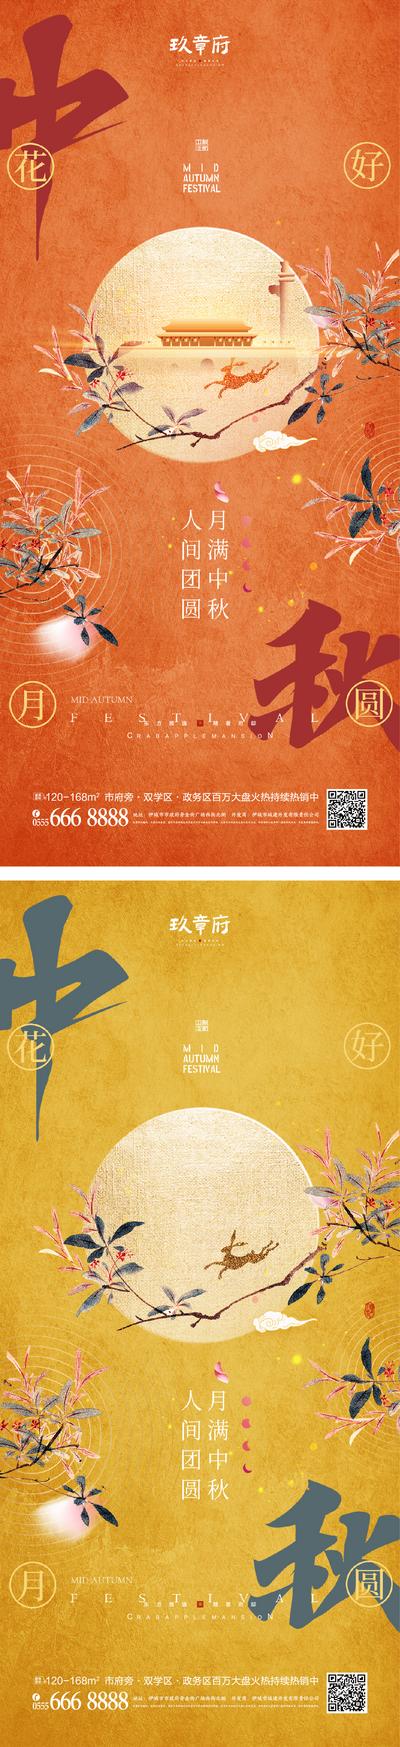 南门网 海报 地产 中国传统节日 中秋节 国潮 月亮 兔子 剪影 树枝